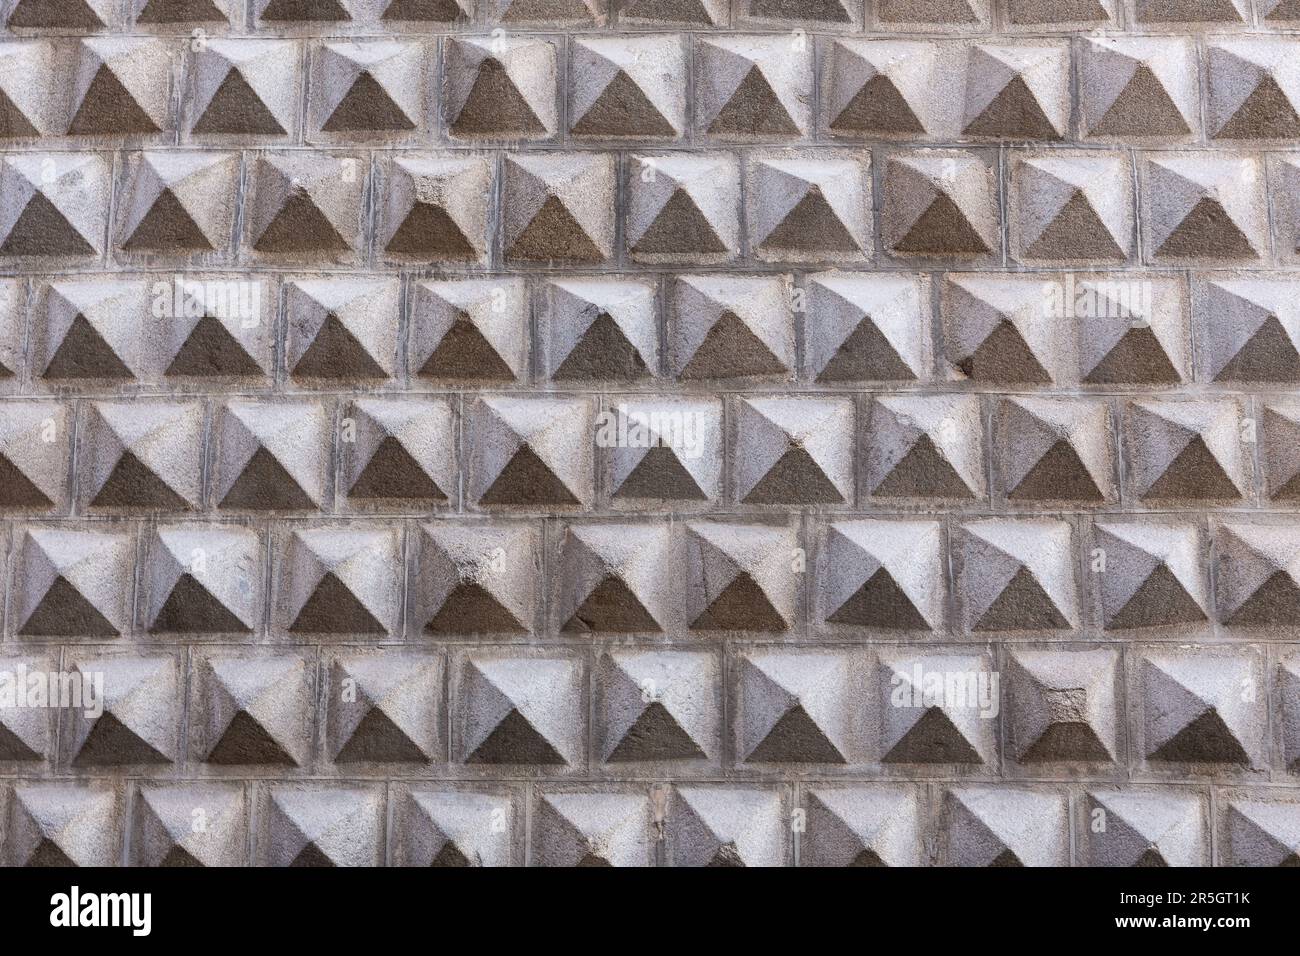 Geometrische Fassade der Casa de los Picos, historisches Renaissance-Gebäude in Segovia, Spanien, mit charakteristischer Fassade aus Granitblöcken. Stockfoto